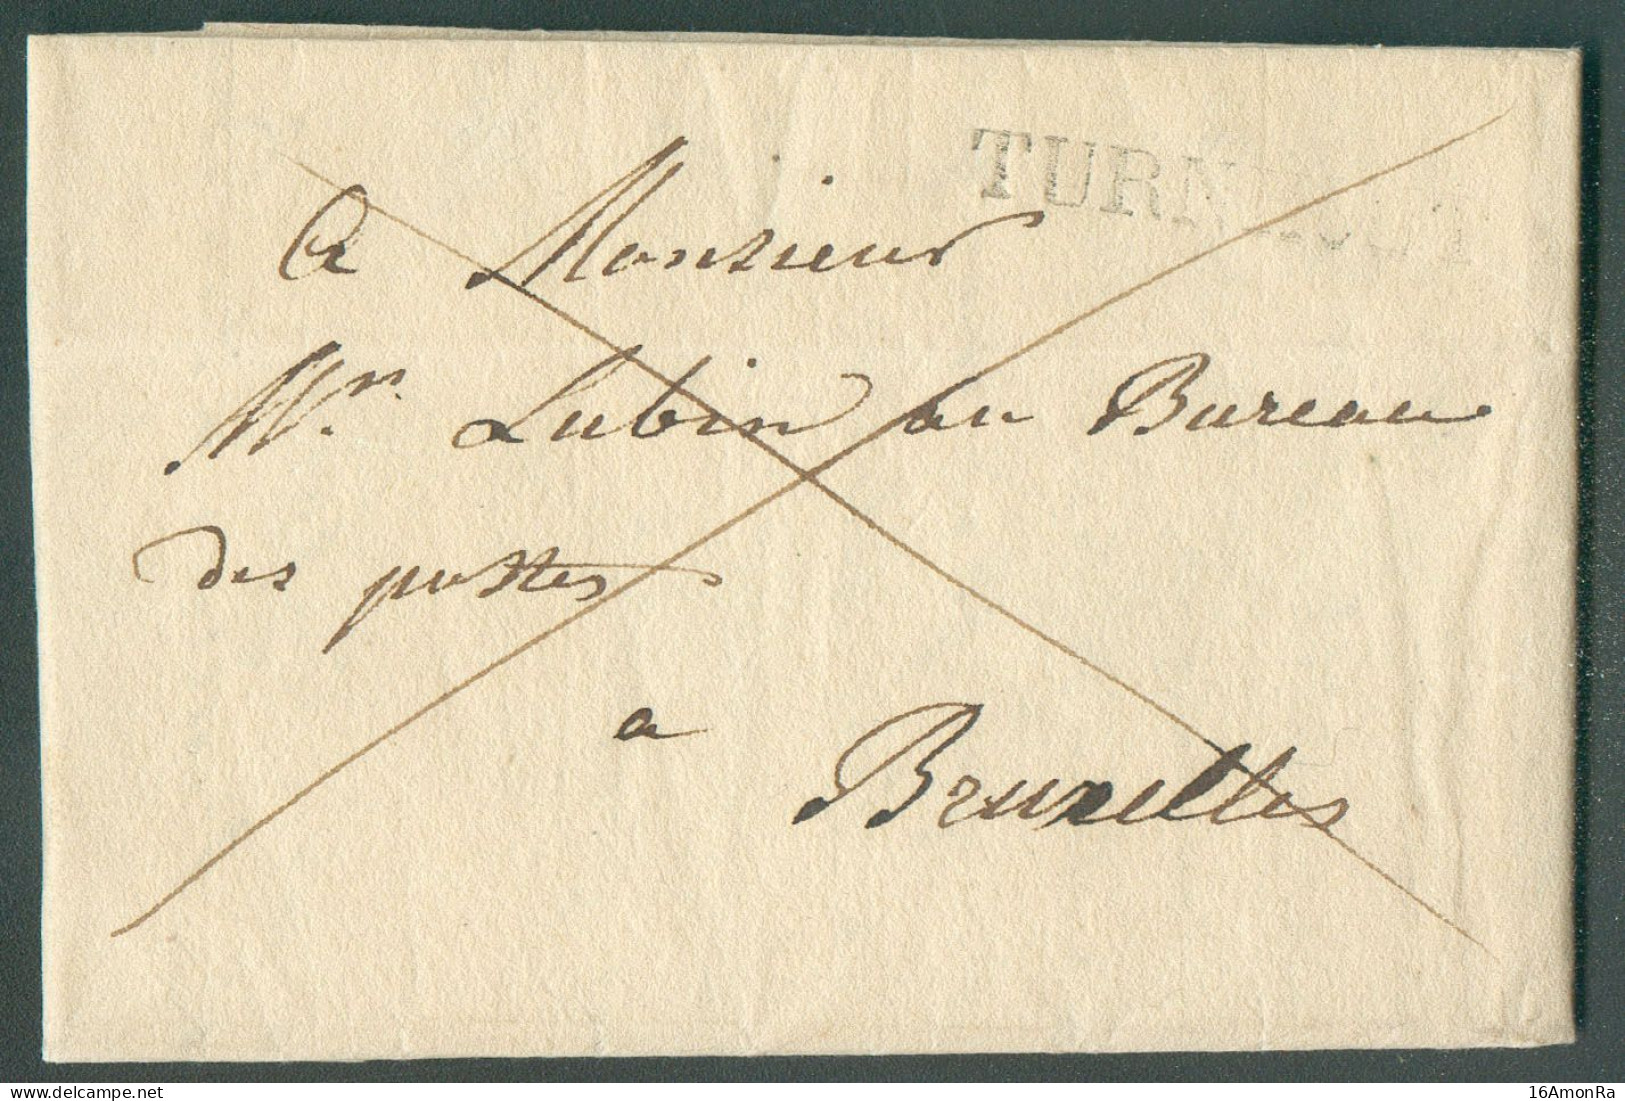 LAC De TURNHOUT le 4 Septembre 1828 Adressée En Franchise De Port à Mr. Lubin, Au Bureau De Postes à Bruxelles.  Belle F - 1815-1830 (Hollandse Tijd)